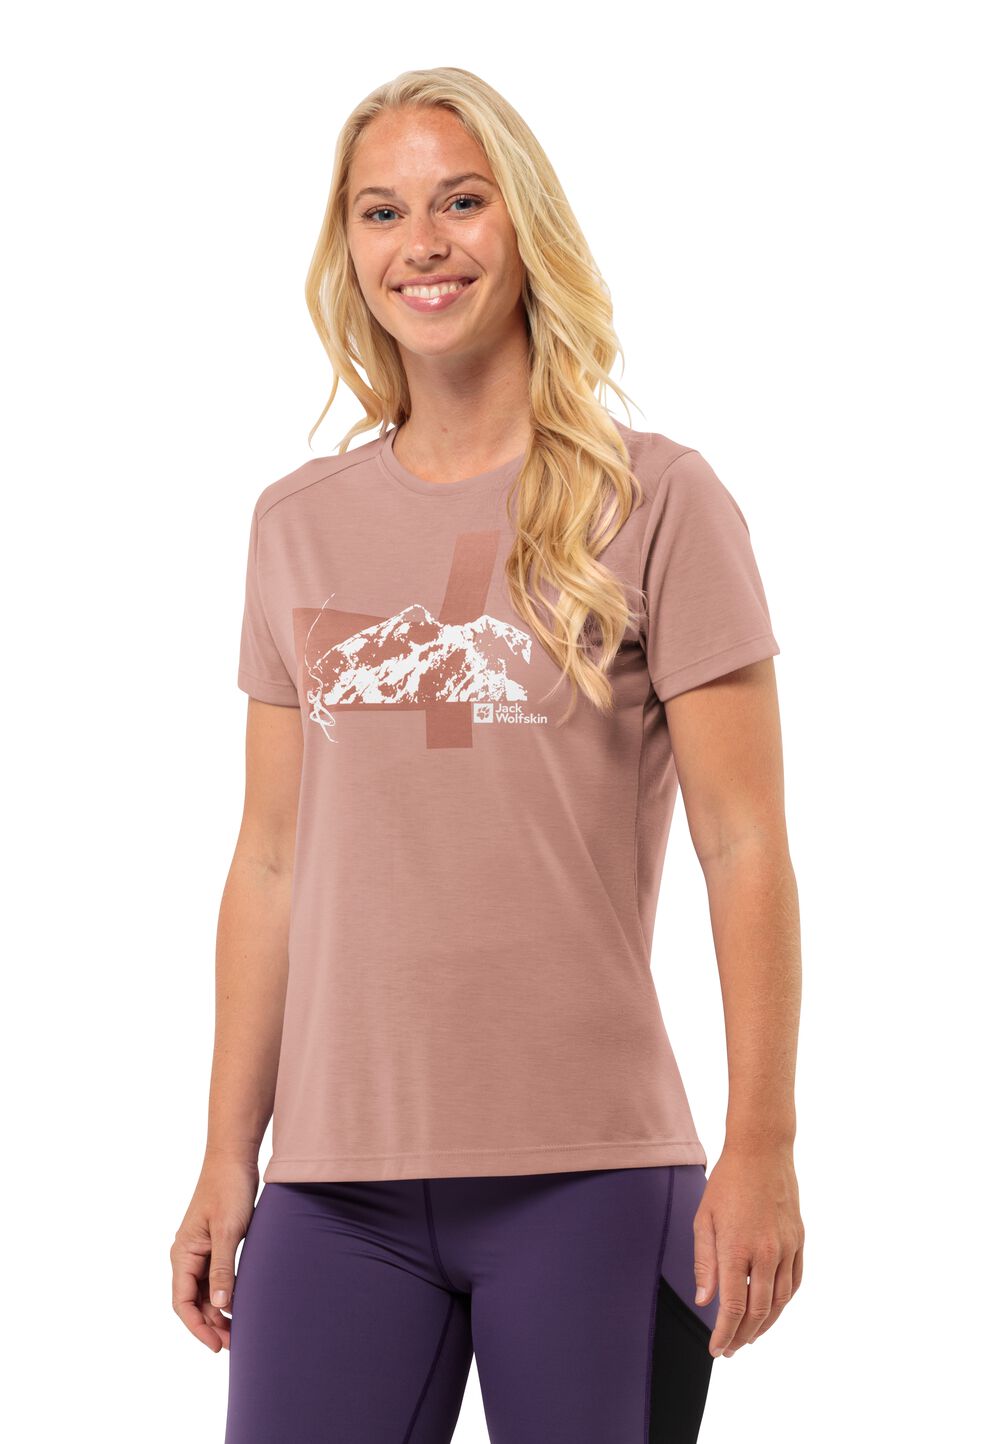 Jack Wolfskin Vonnan S S Graphic T-Shirt Women Functioneel shirt Dames L bruin rose dawn